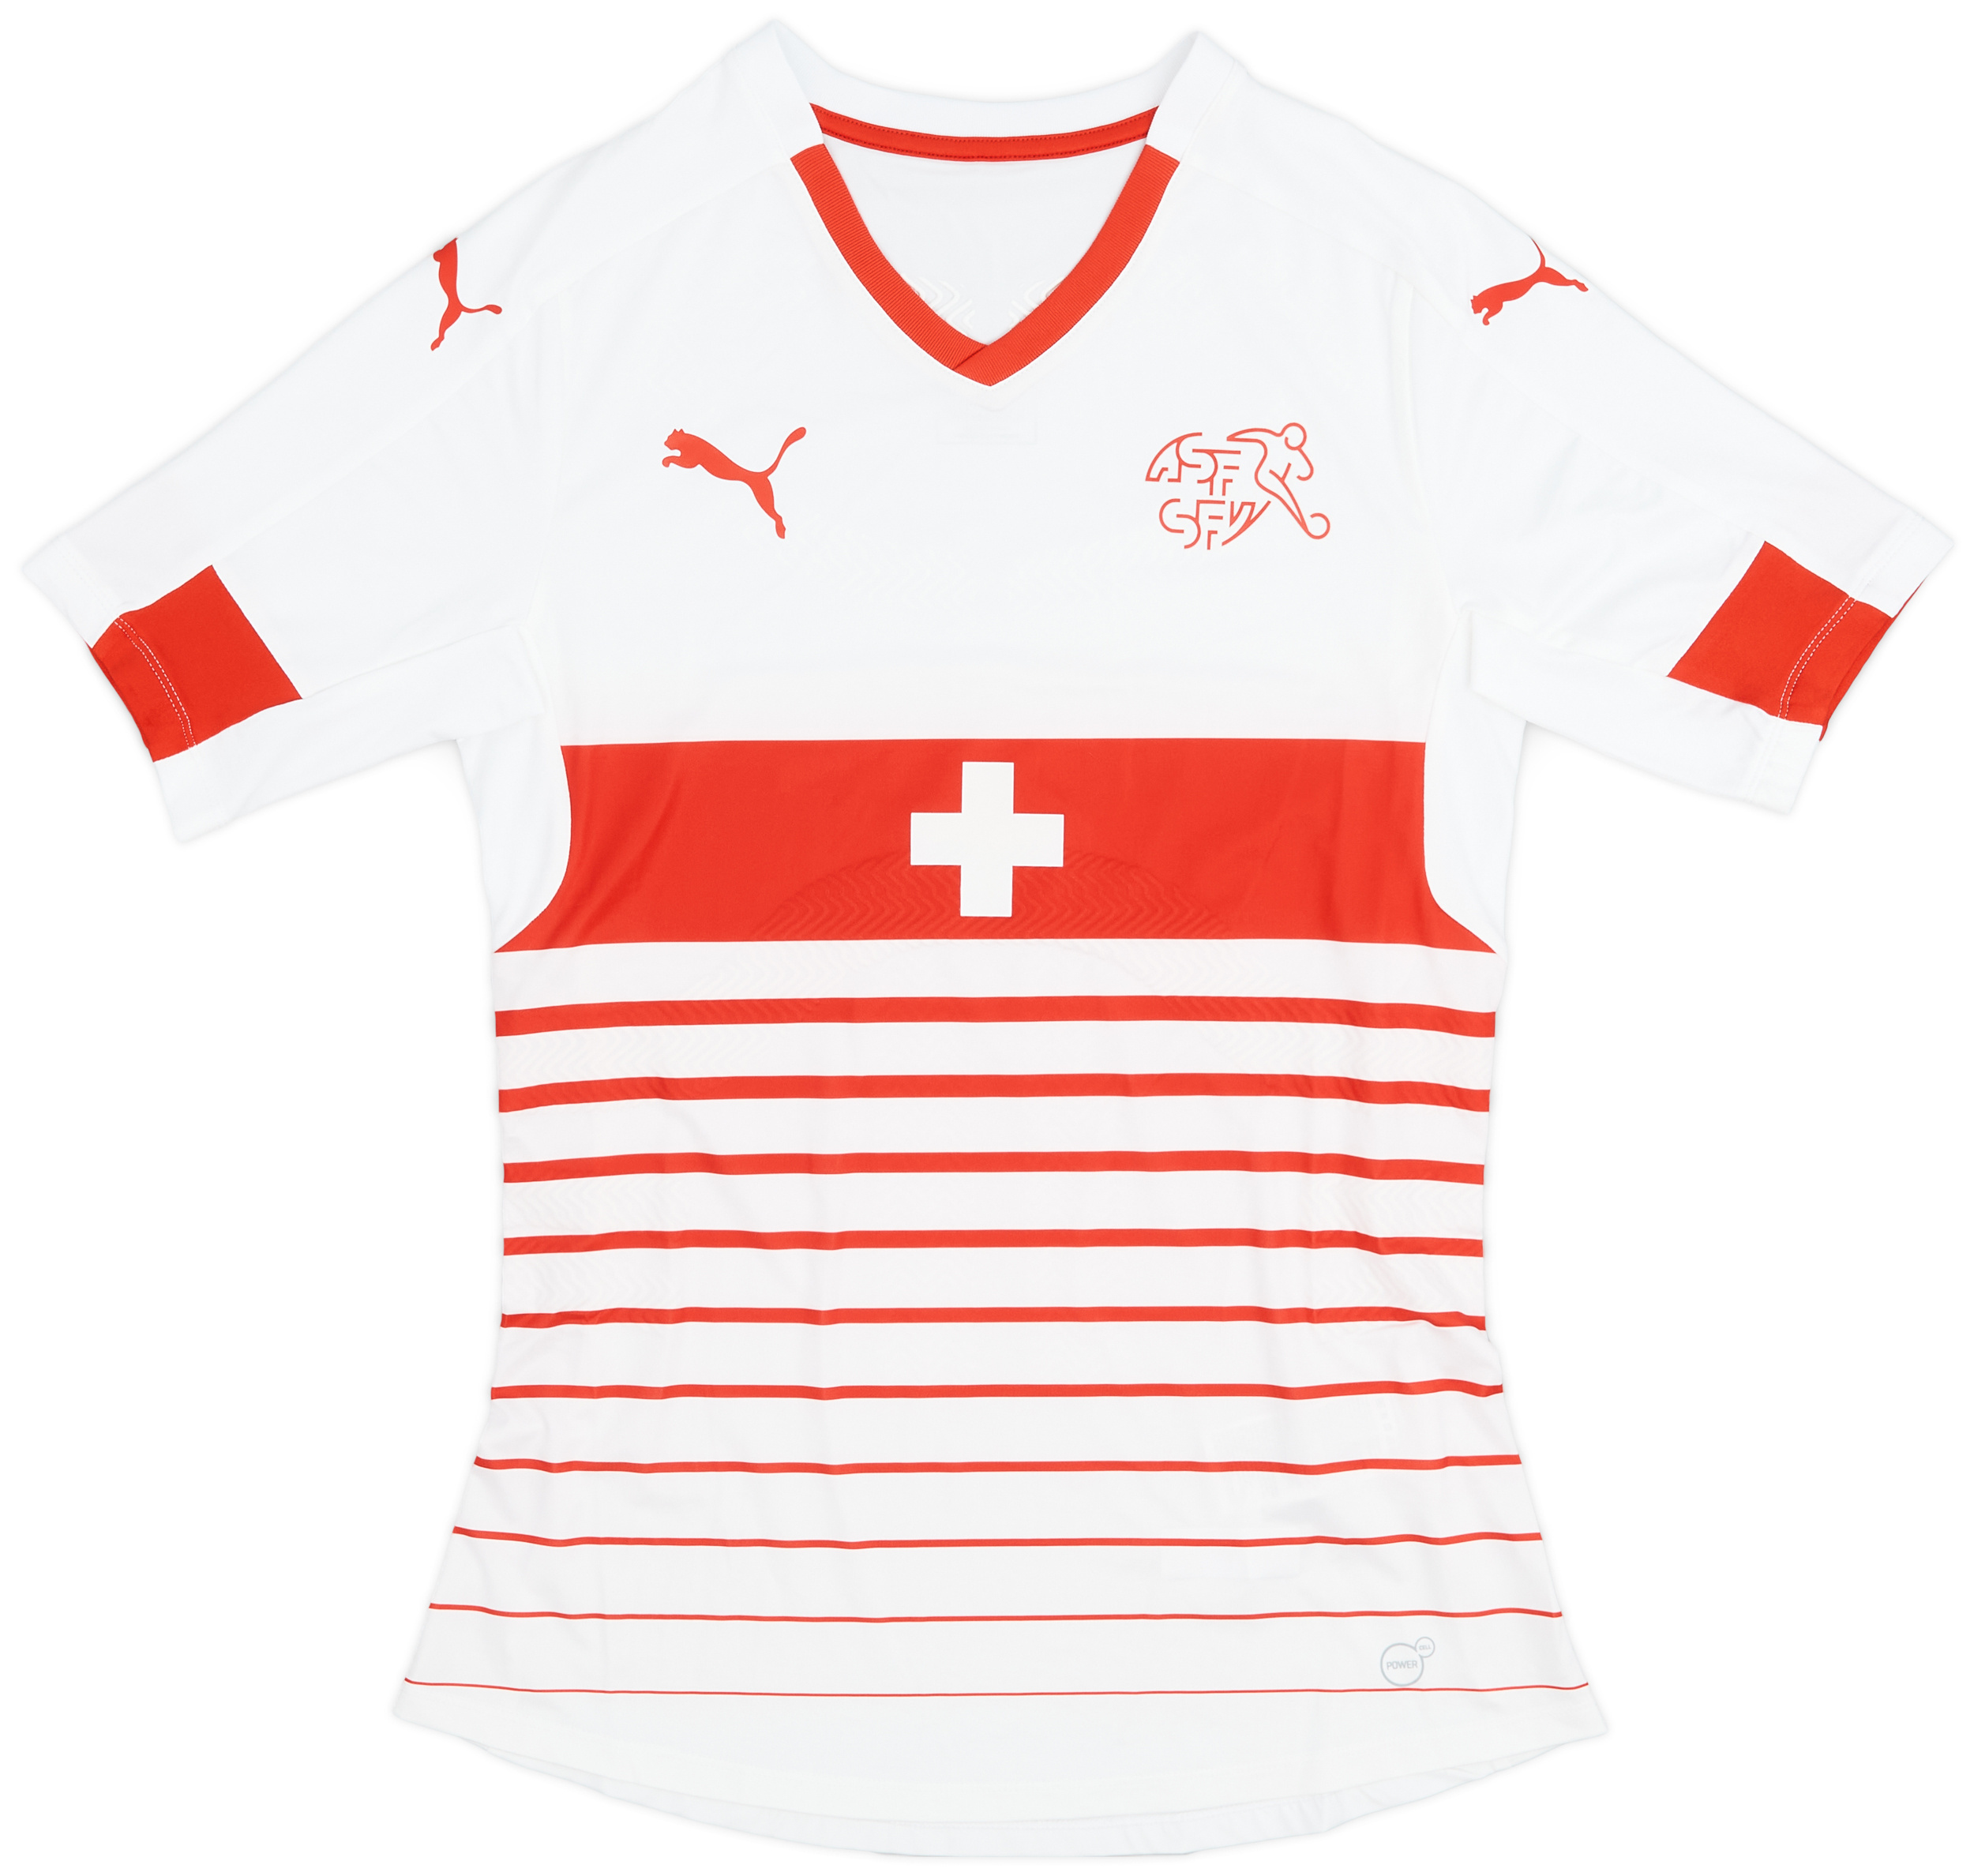 2016-17 Switzerland Player Issue Away Shirt - 10/10 - ()